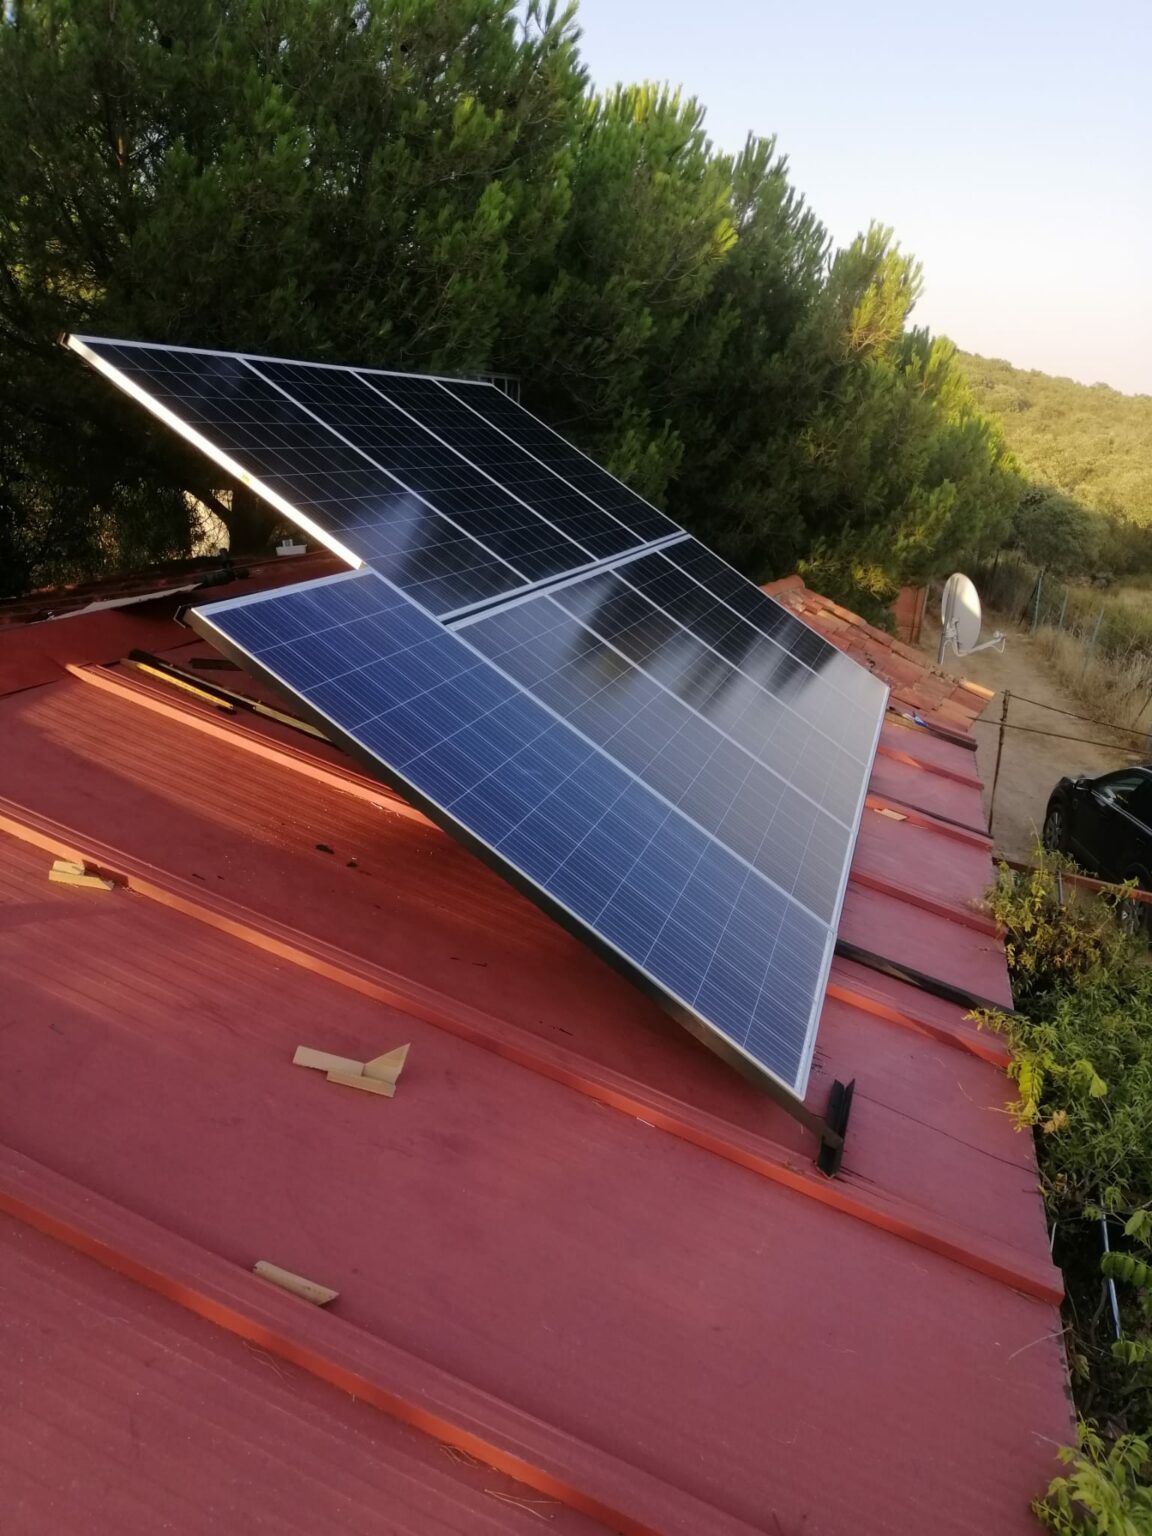 Placas solares en tejado de casa de campo.